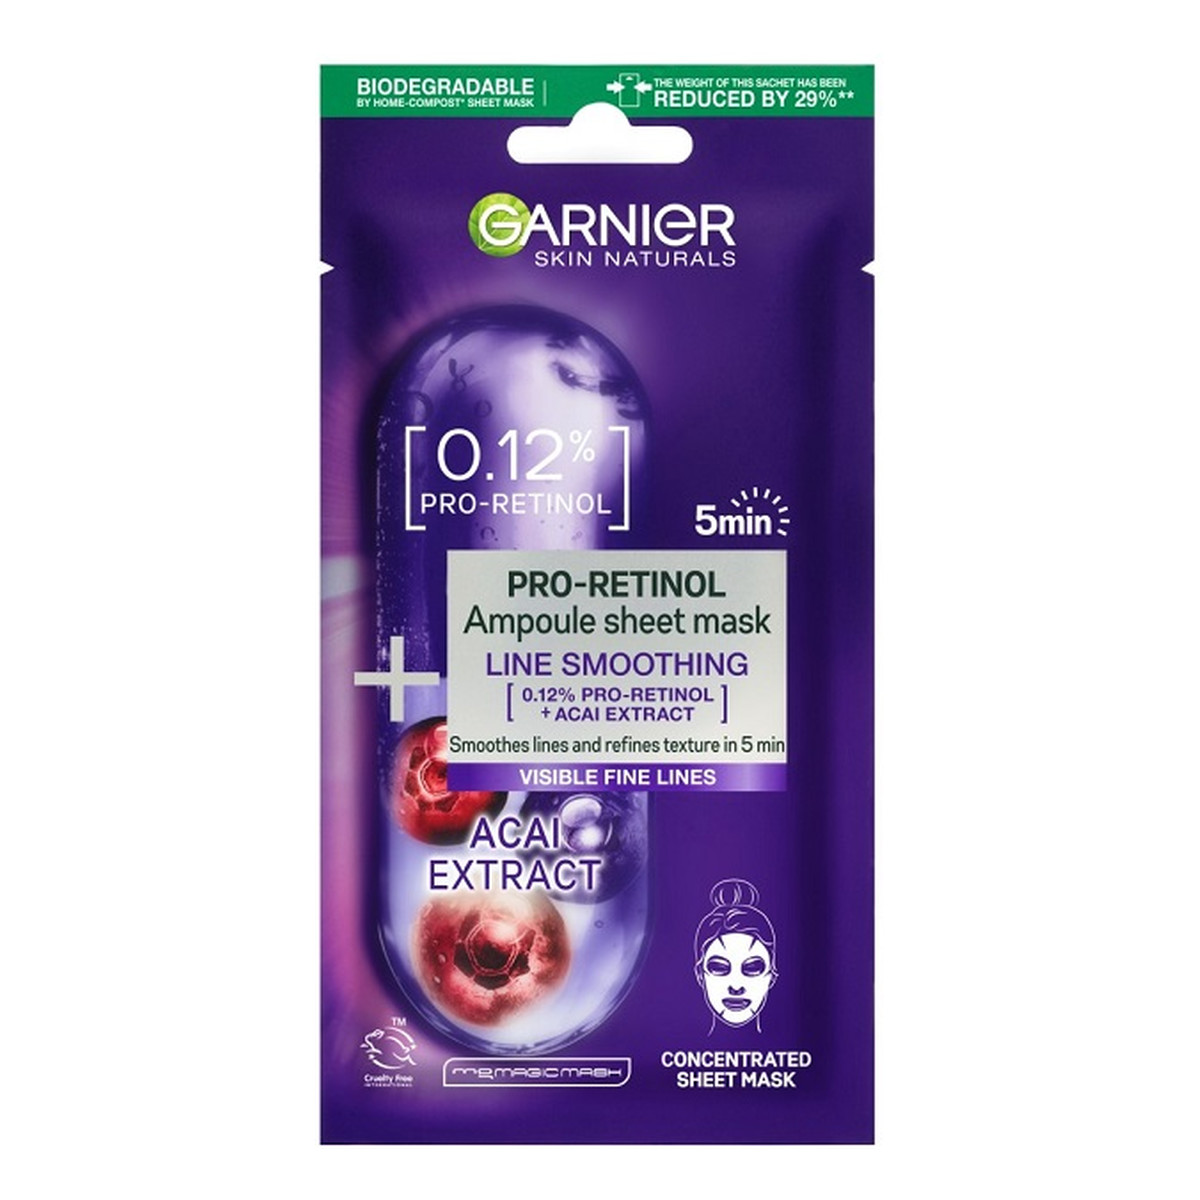 Garnier Pro-Retinol Ampoule Sheet Mask ampułka wygładzająca w masce na tkaninie z pro-retinolem 19g